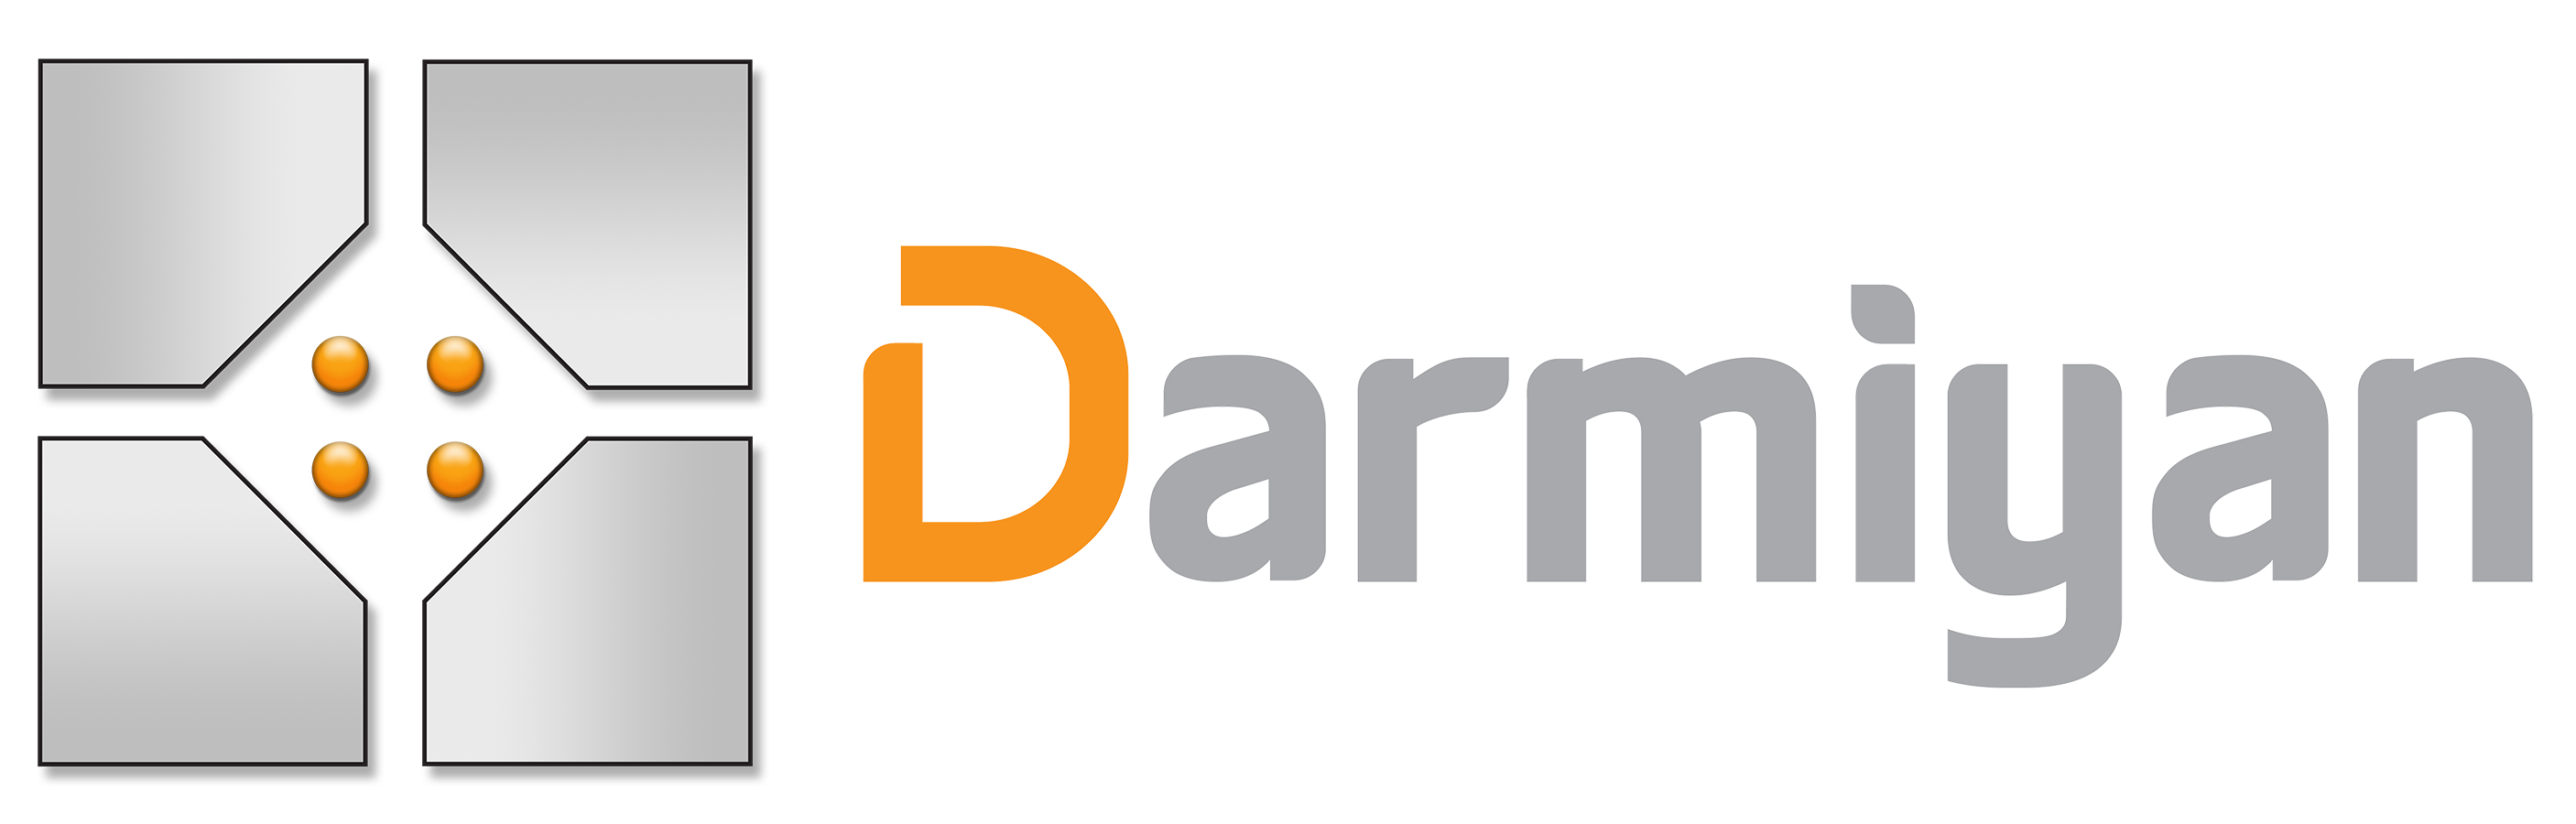 Darmiyan